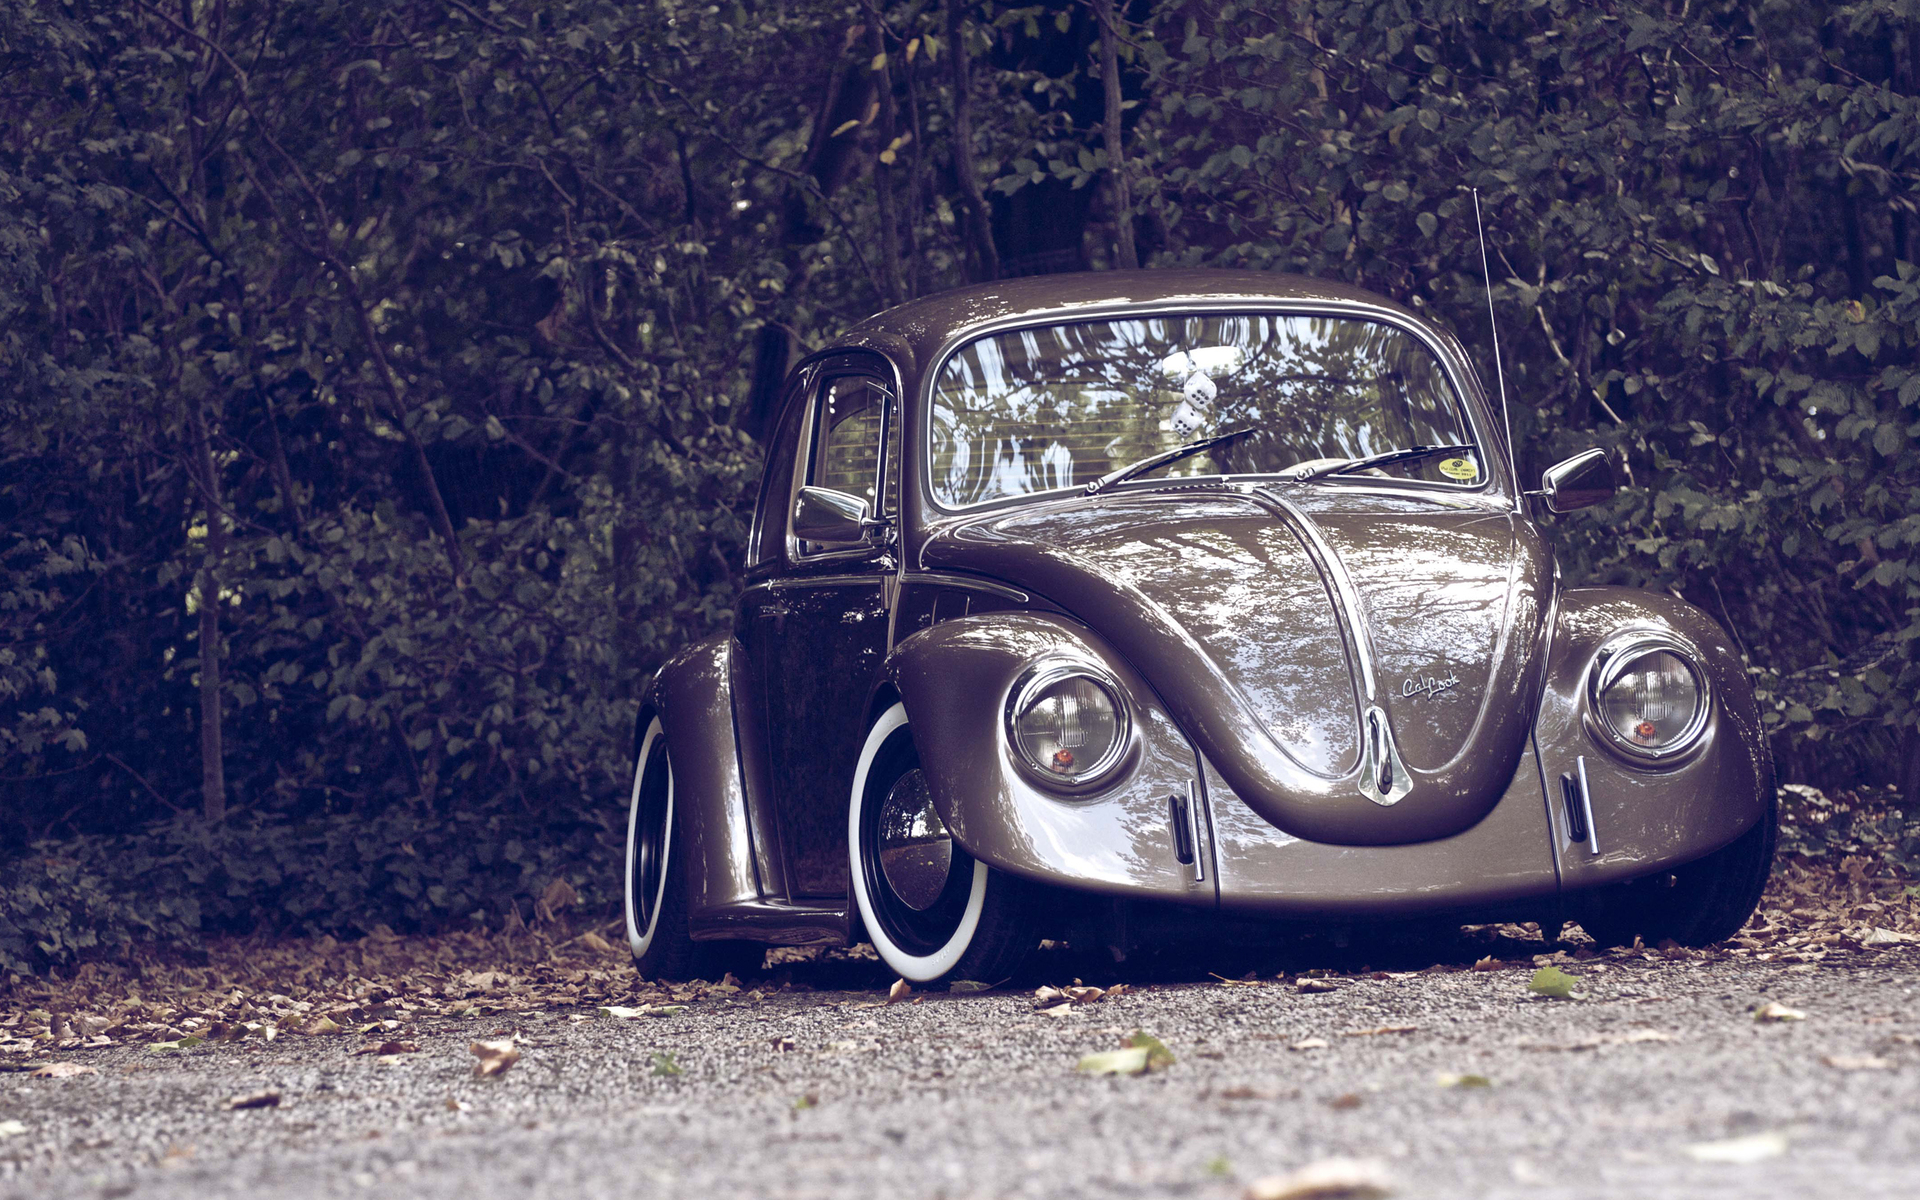 Vehicles Volkswagen Beetle HD Wallpaper | Background Image